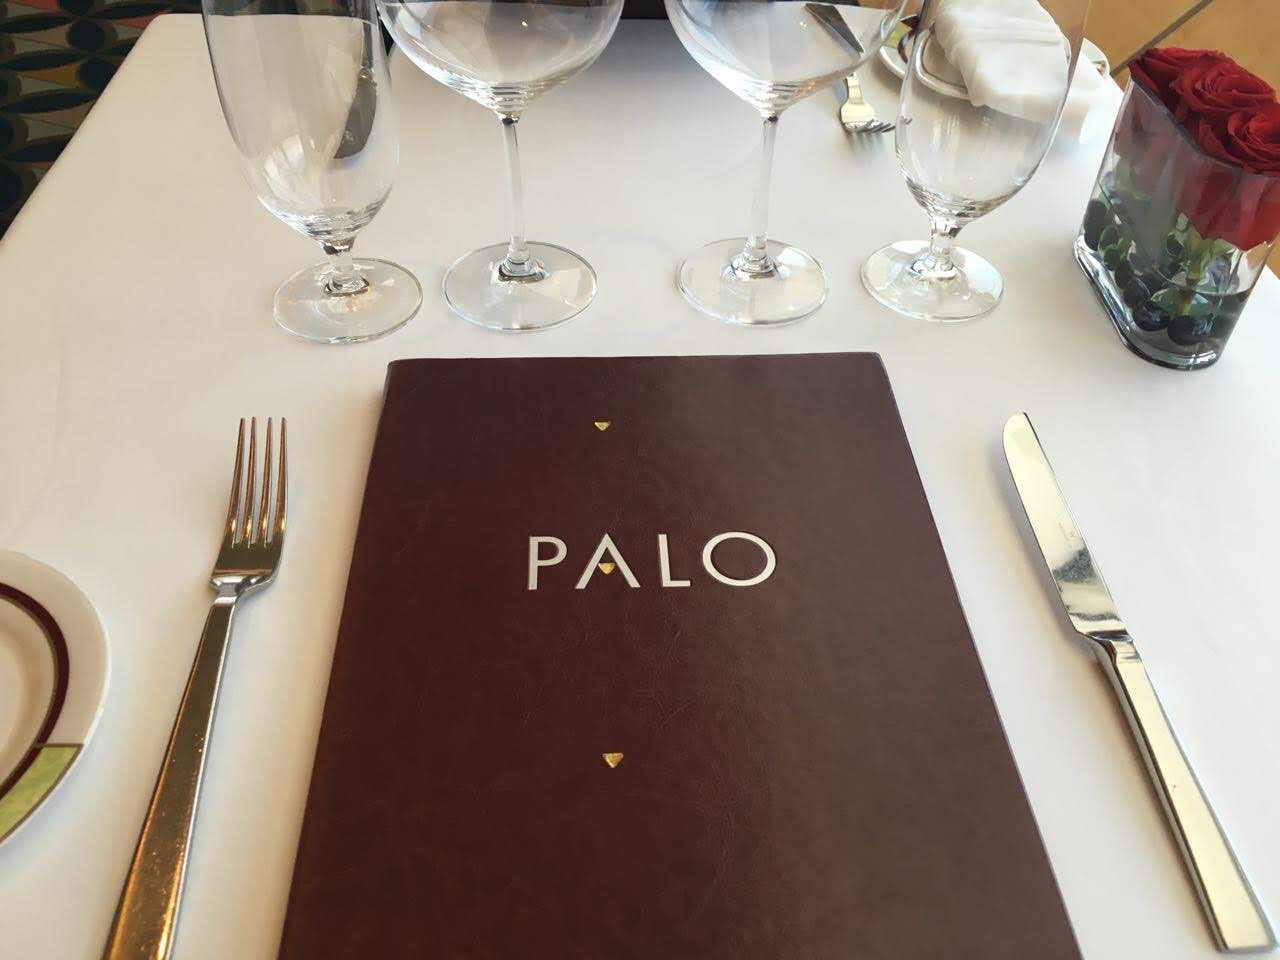 ディズニークルーズラインのレストラン『Palo(パロ)』